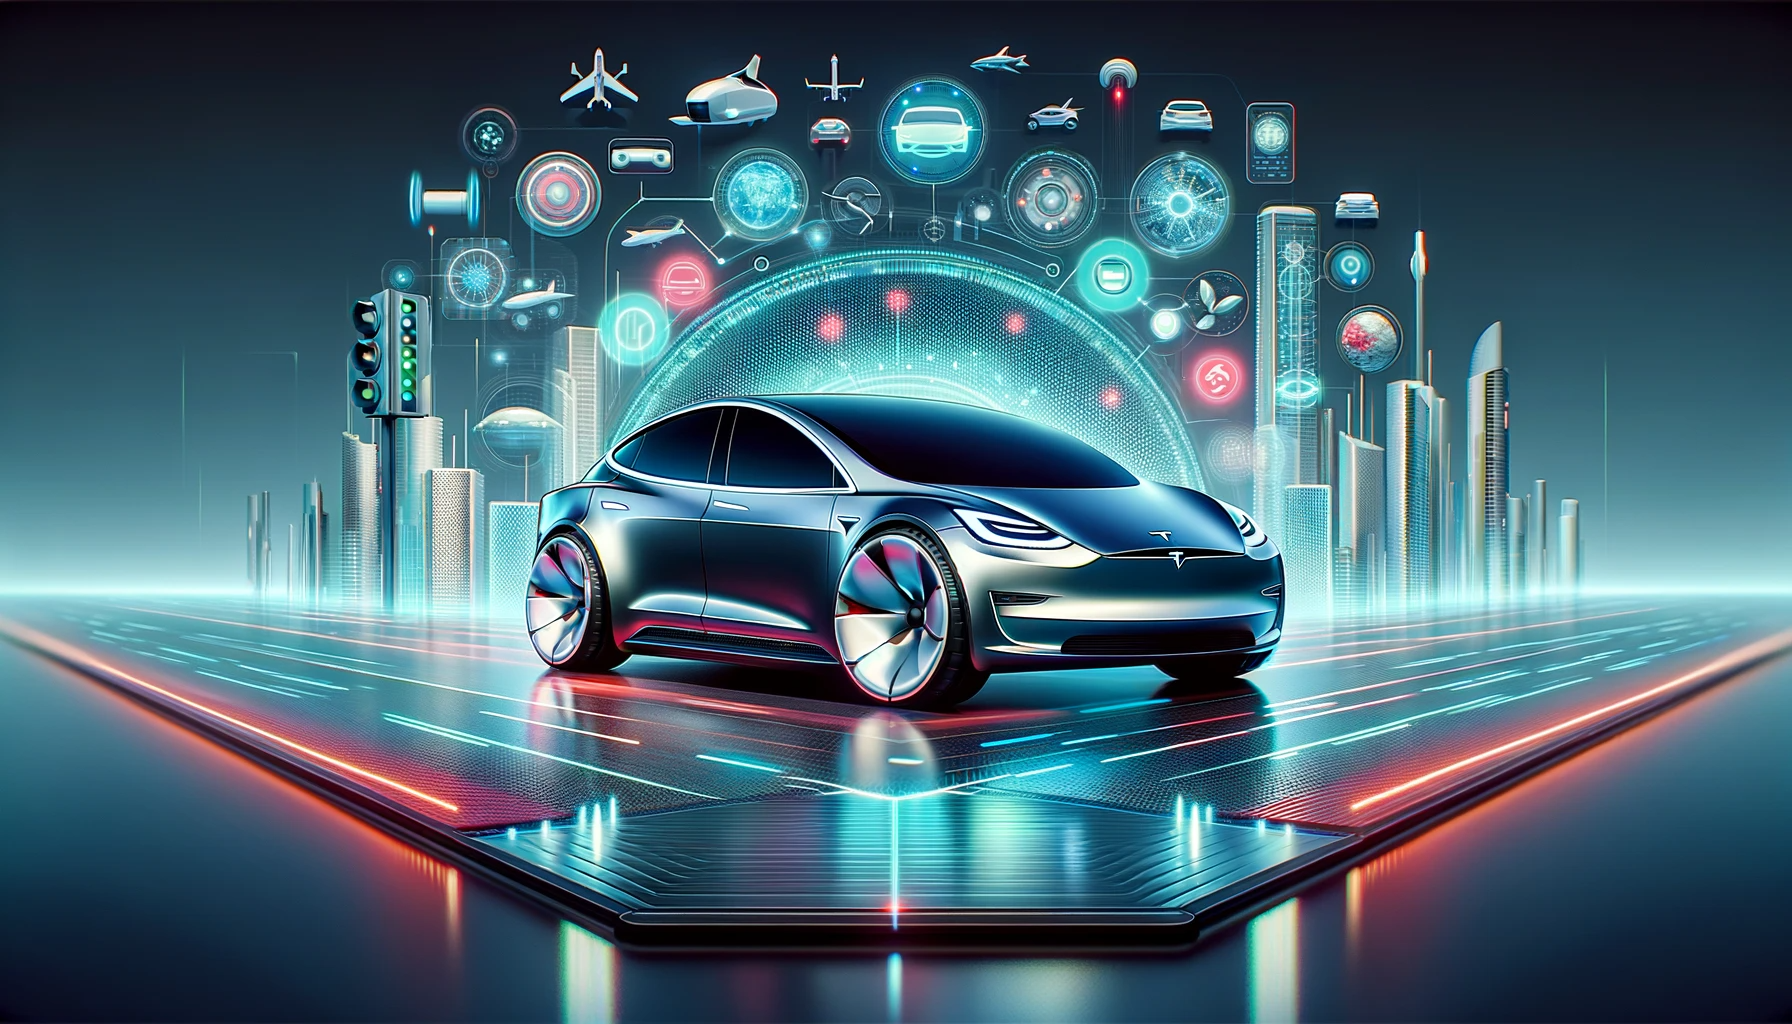 "Redwood" förväntas ha innovativa funktioner som återspeglar Teslas fokus på framtidens mobilitet. En ny modell som de flesta kan köpa